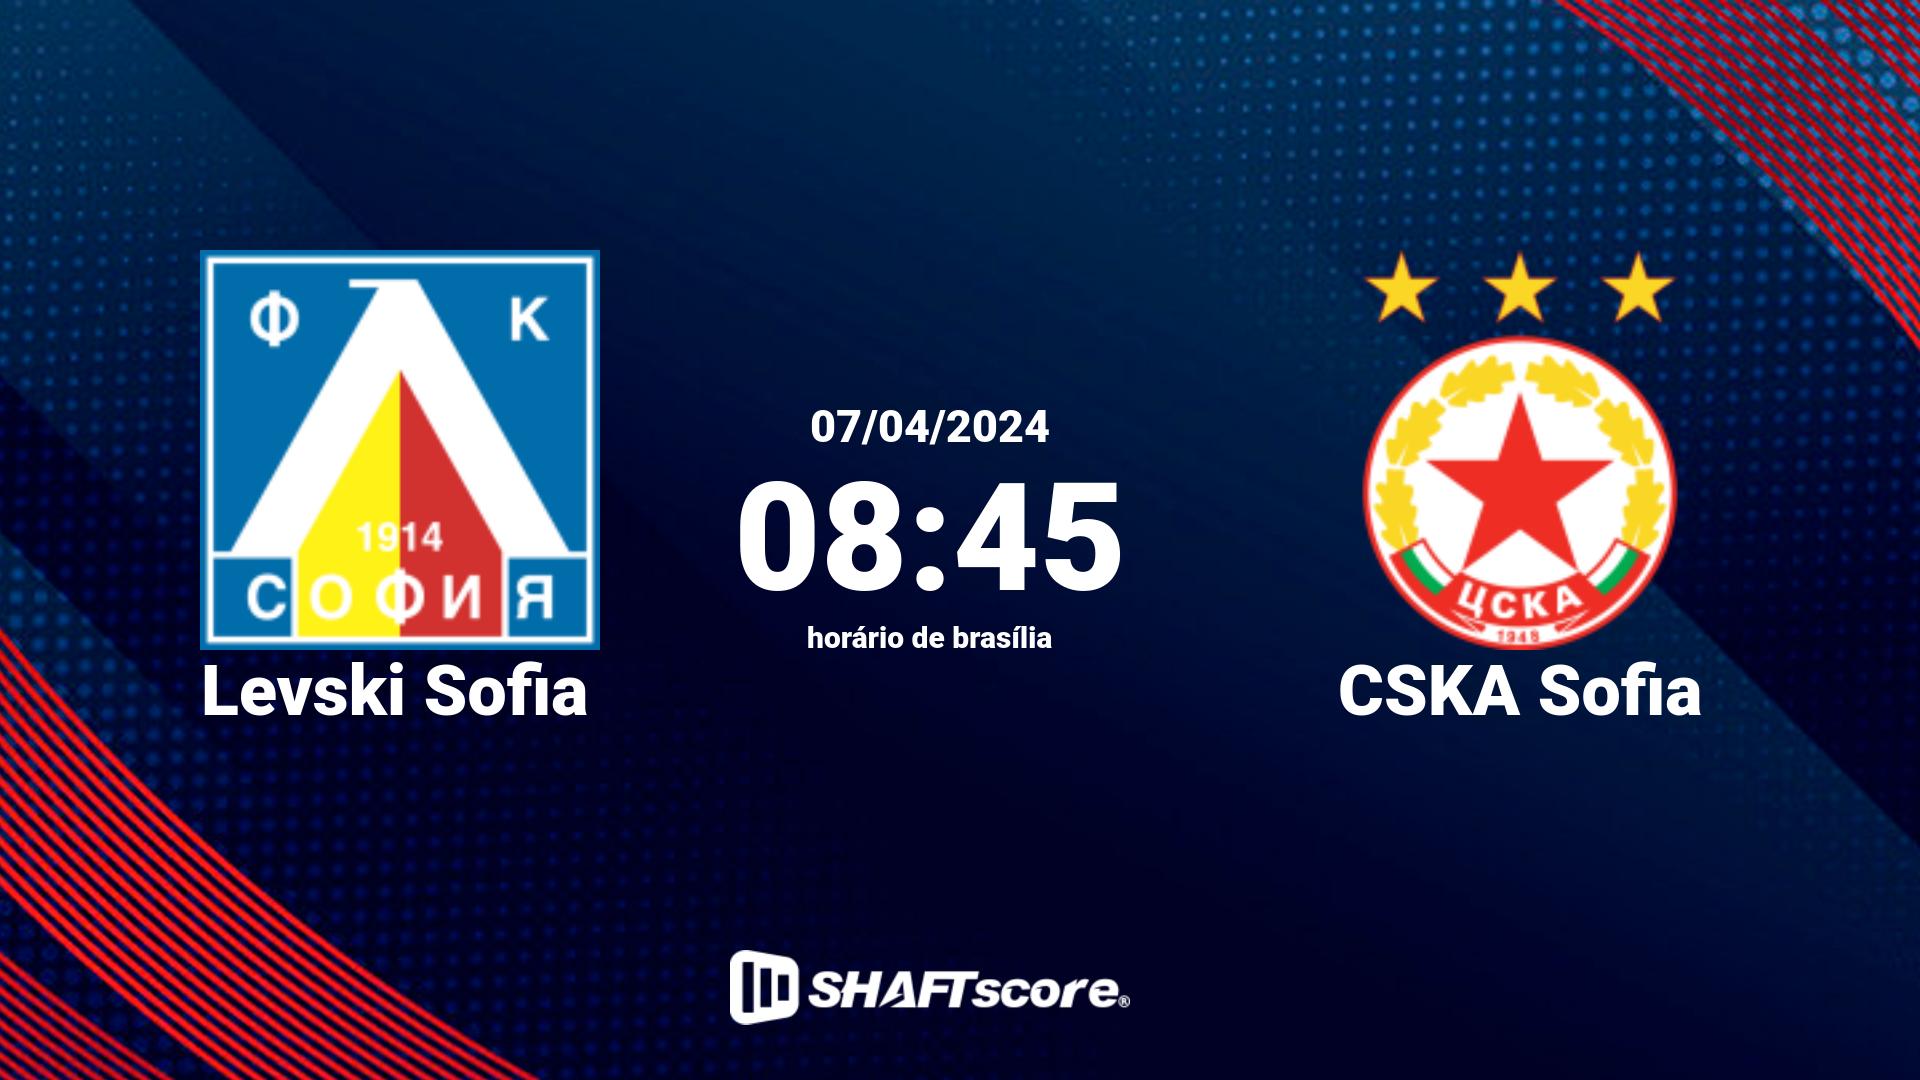 Estatísticas do jogo Levski Sofia vs CSKA Sofia 07.04 08:45